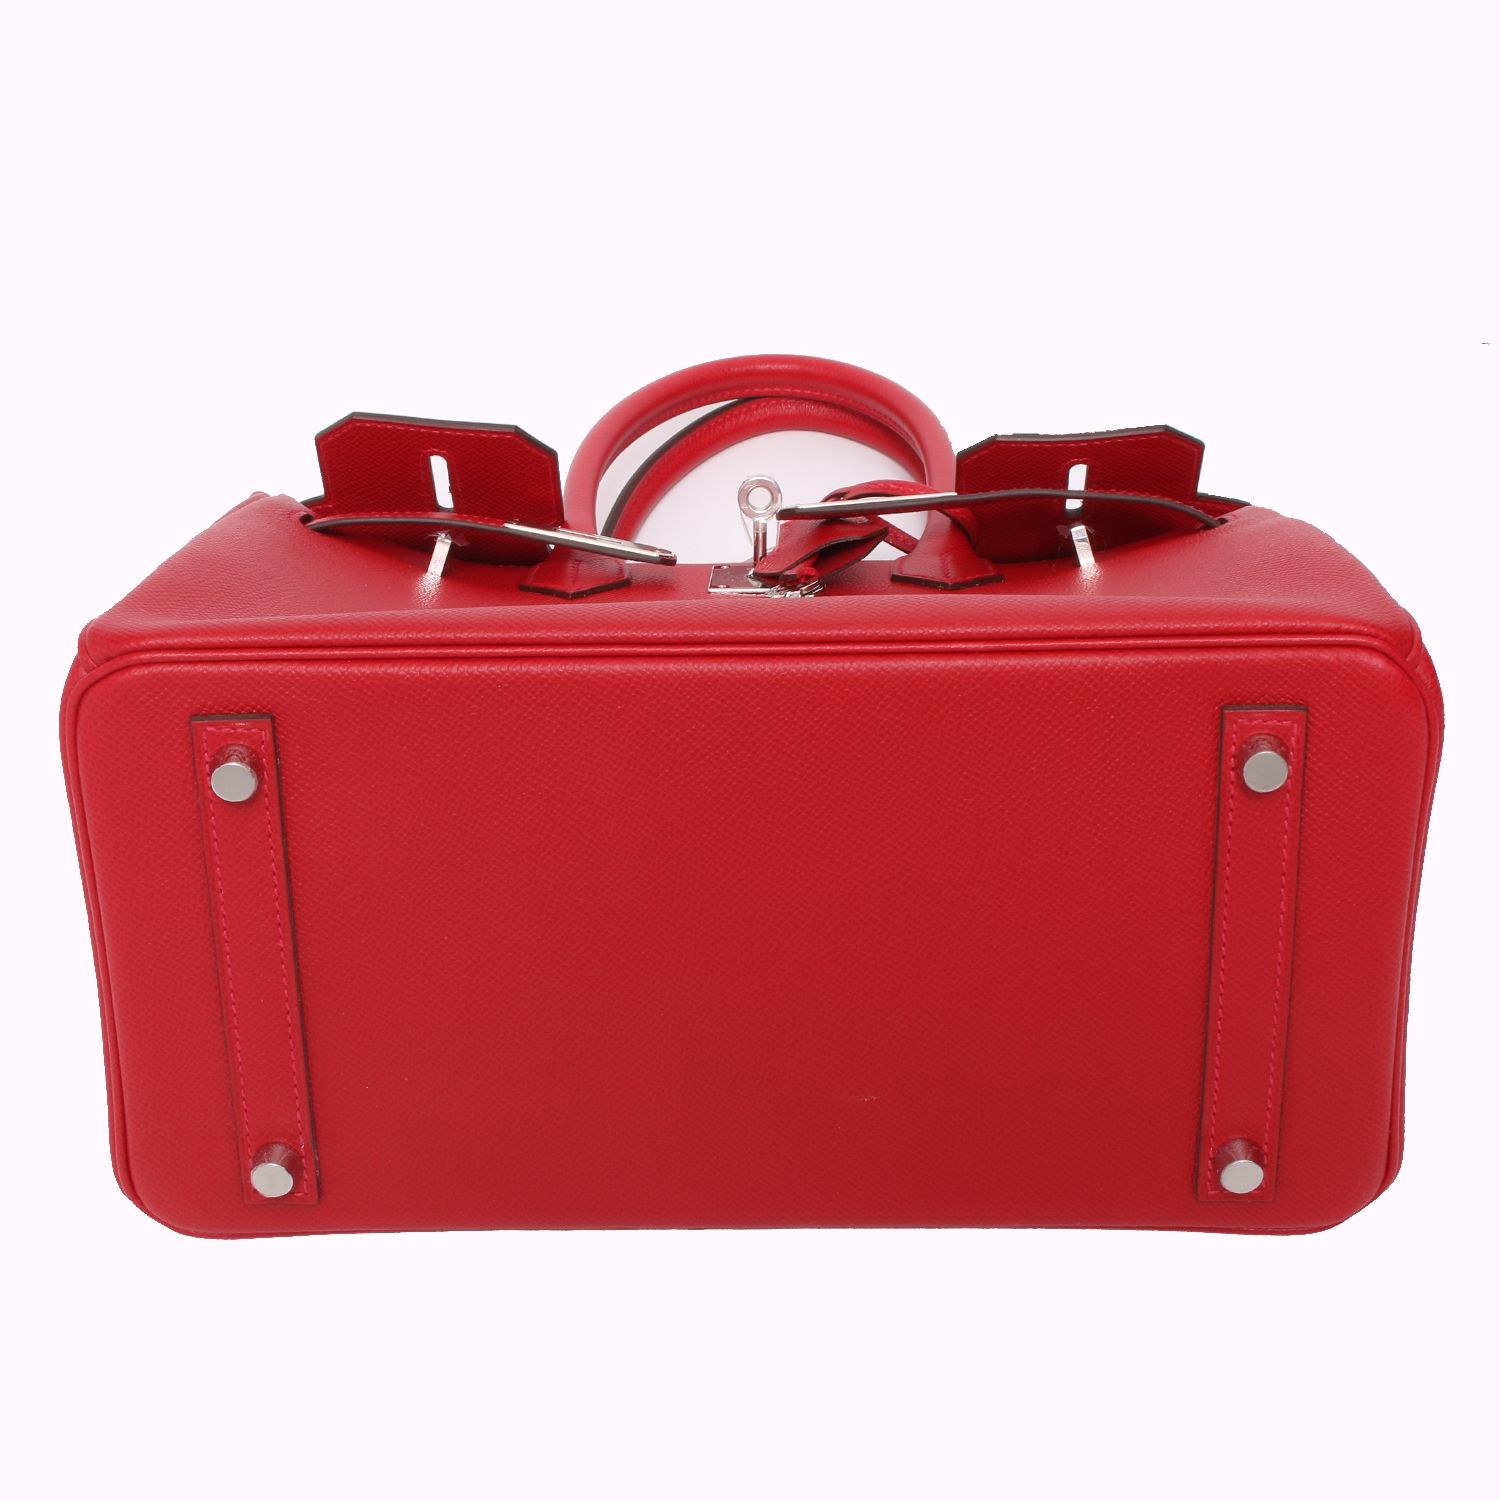 Hermès Birkin 30 Rouge Casaque Togo Palladium Hardware PHW — The